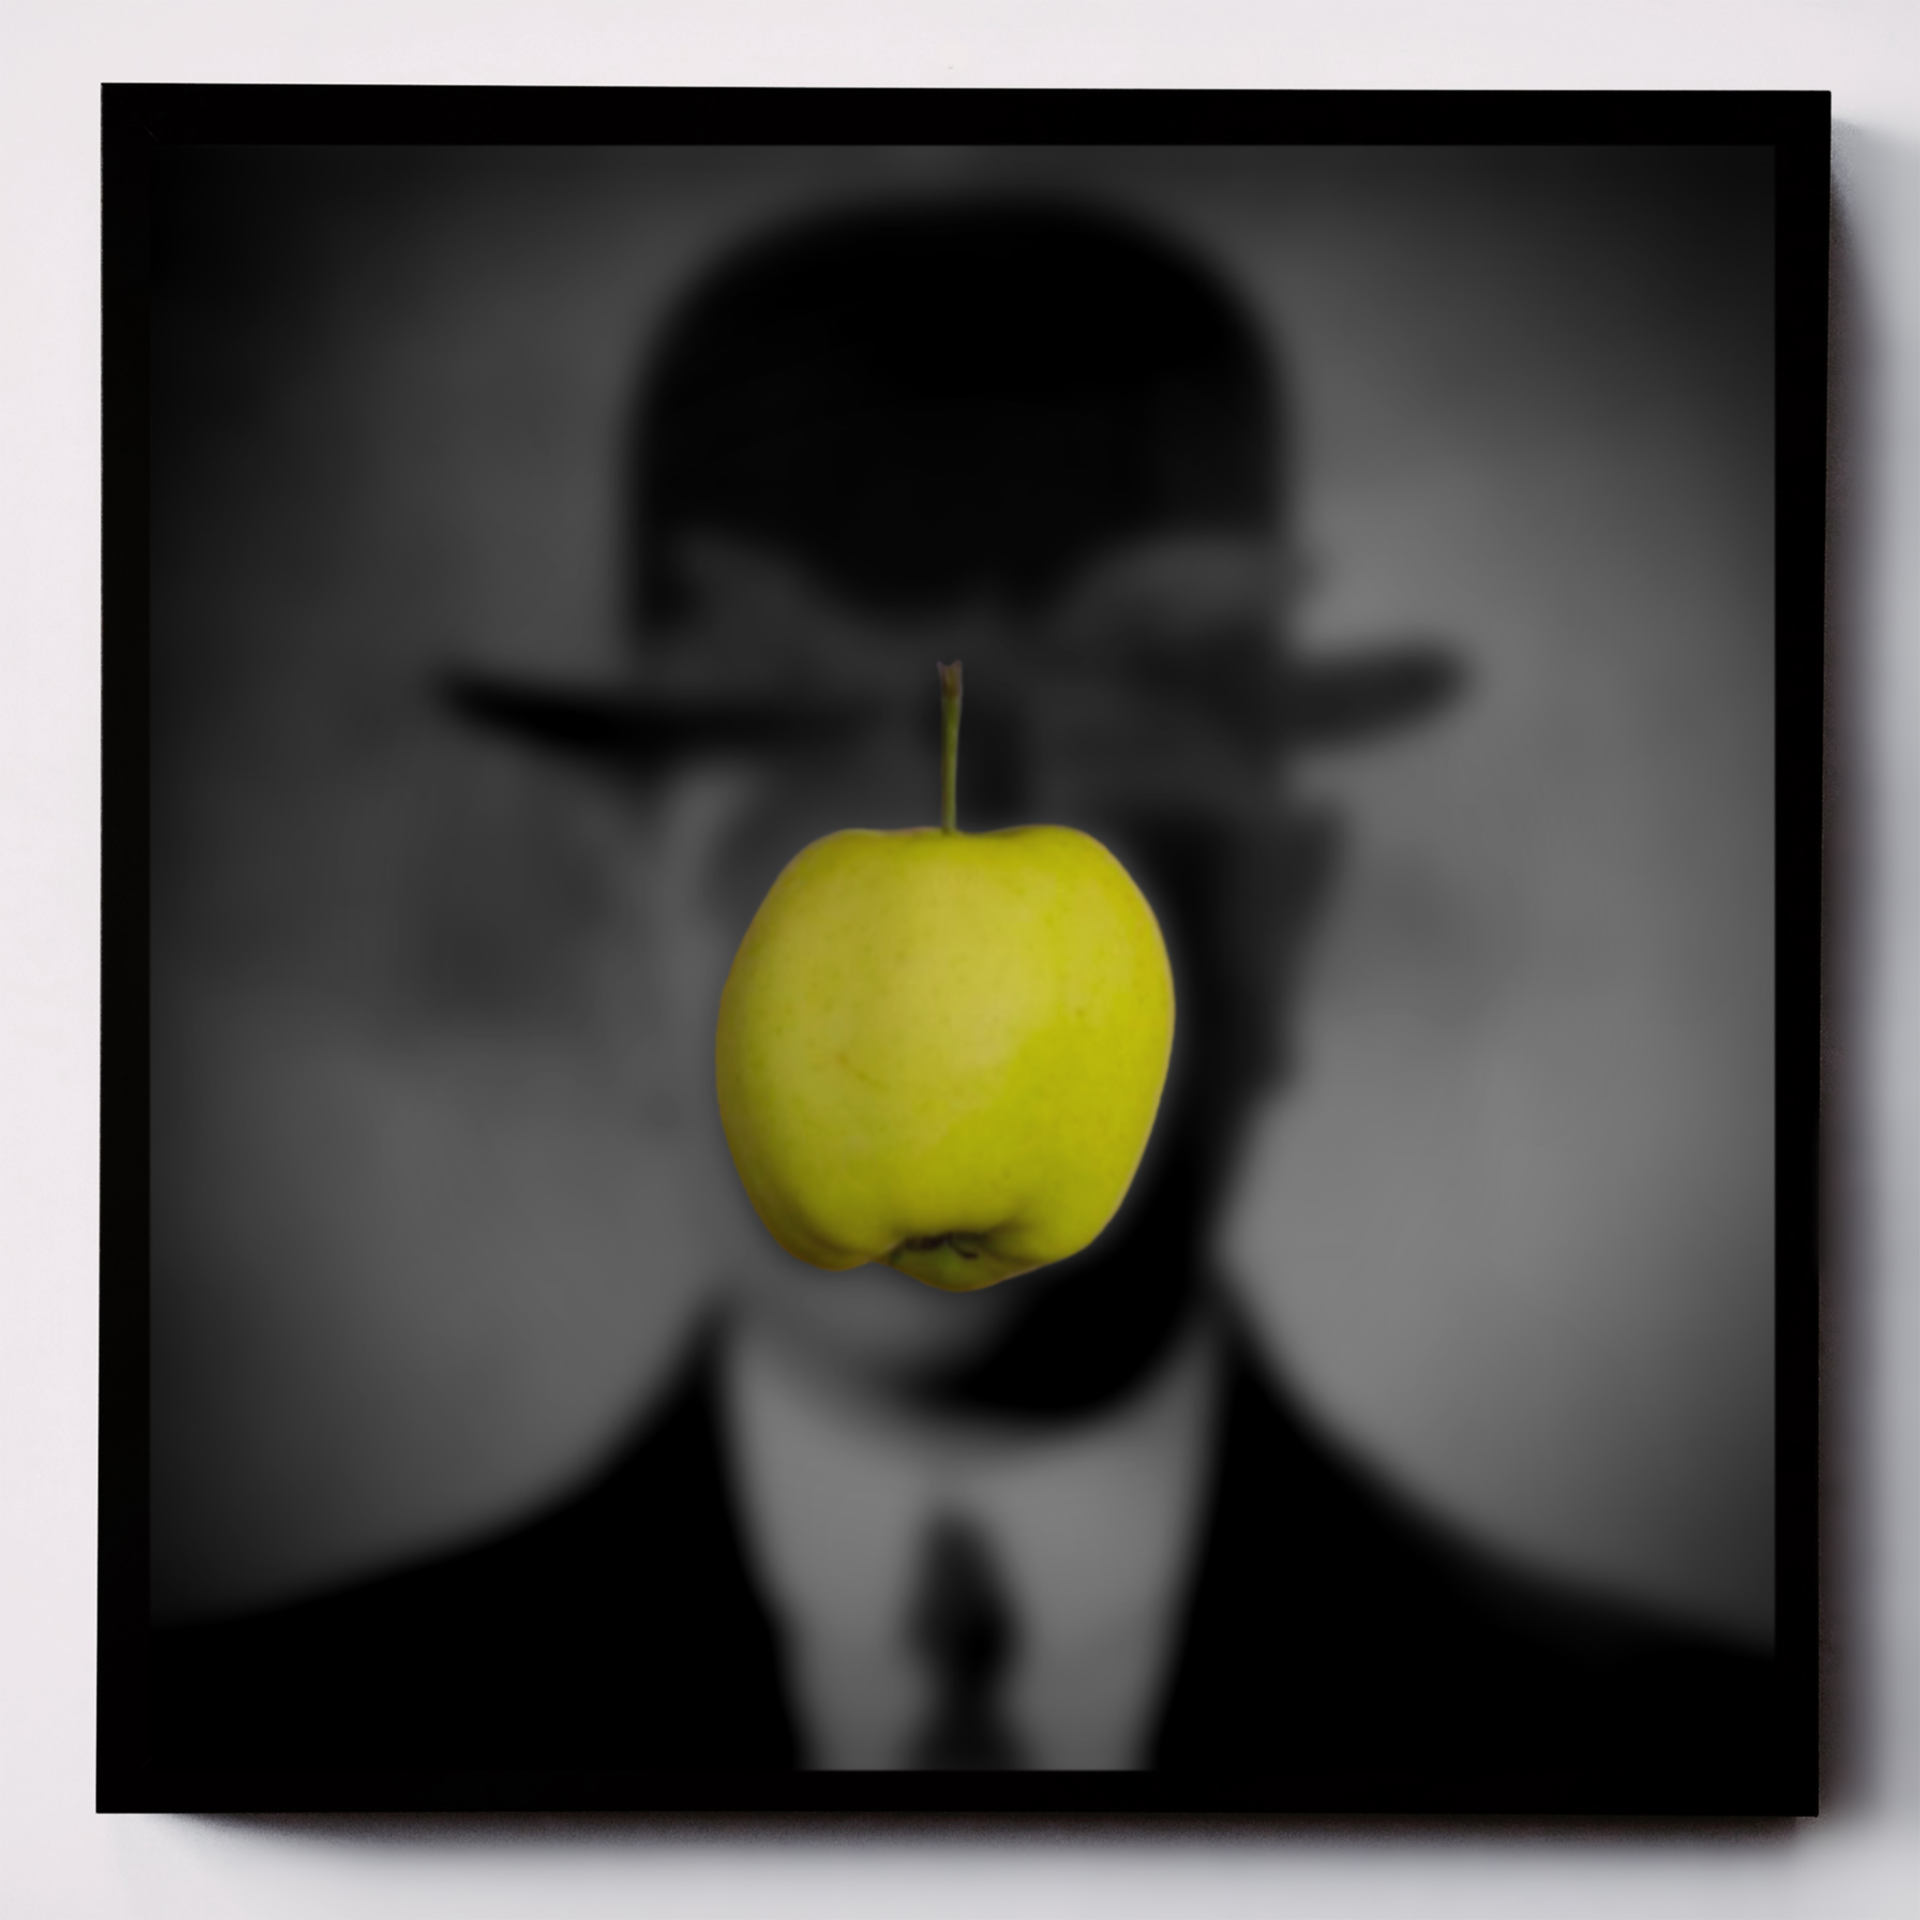 Kompozycja graficzna przedstawiająca zielone jabłko na tle nieostrego czarno-białego tła ukazującego niewyraźny portret mężczyzny w meloniku.   	